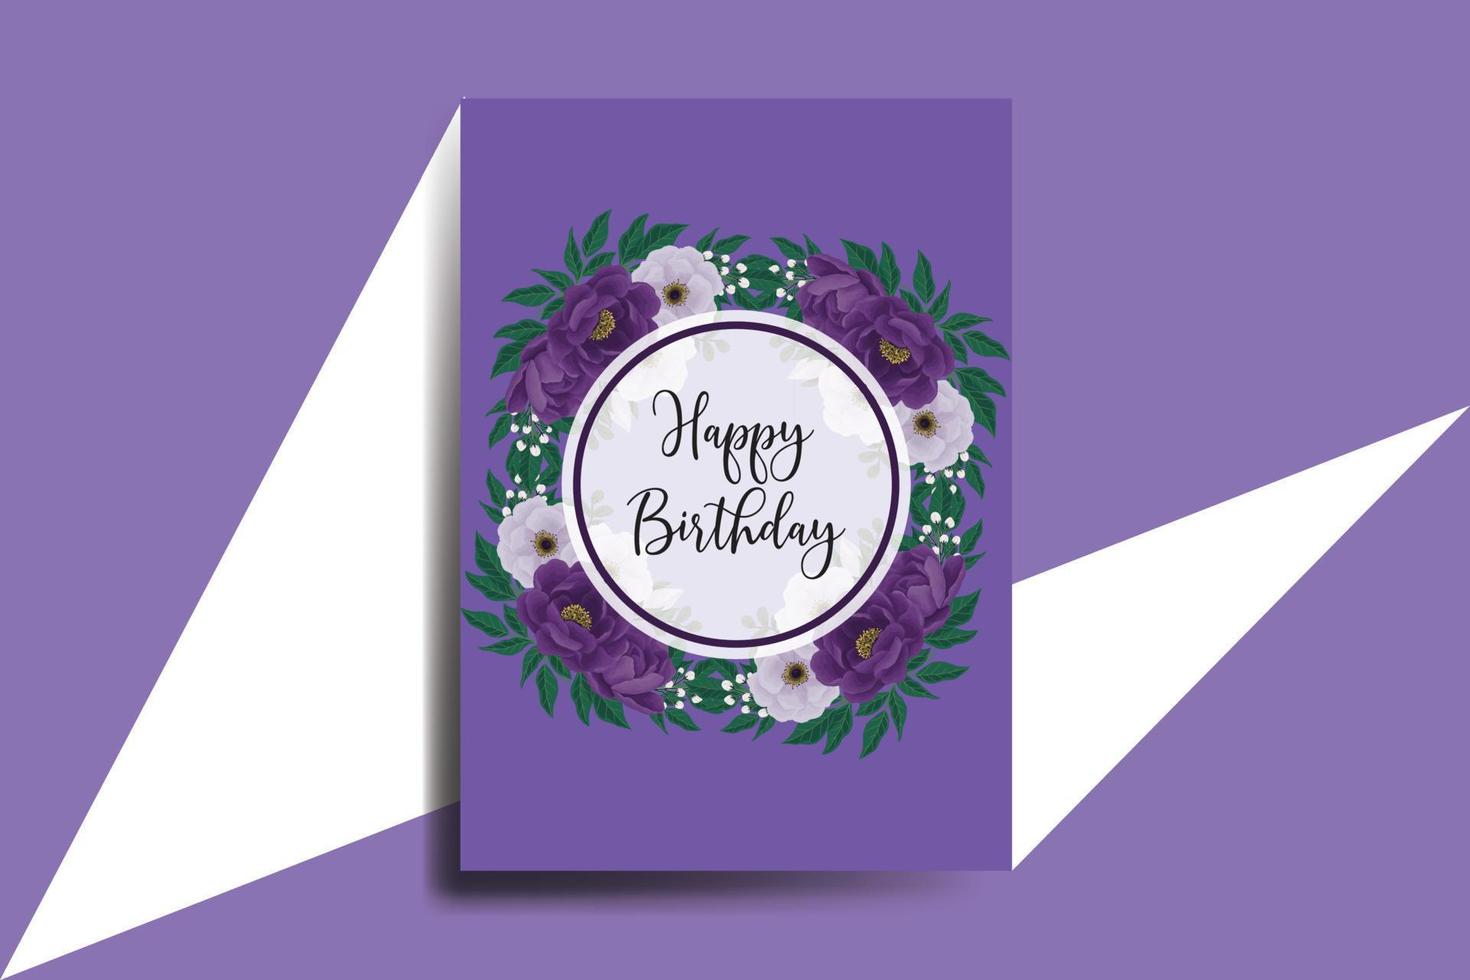 cartão de felicitações cartão de aniversário em aquarela digital desenhado à mão modelo de design de flor de peônia roxa vetor